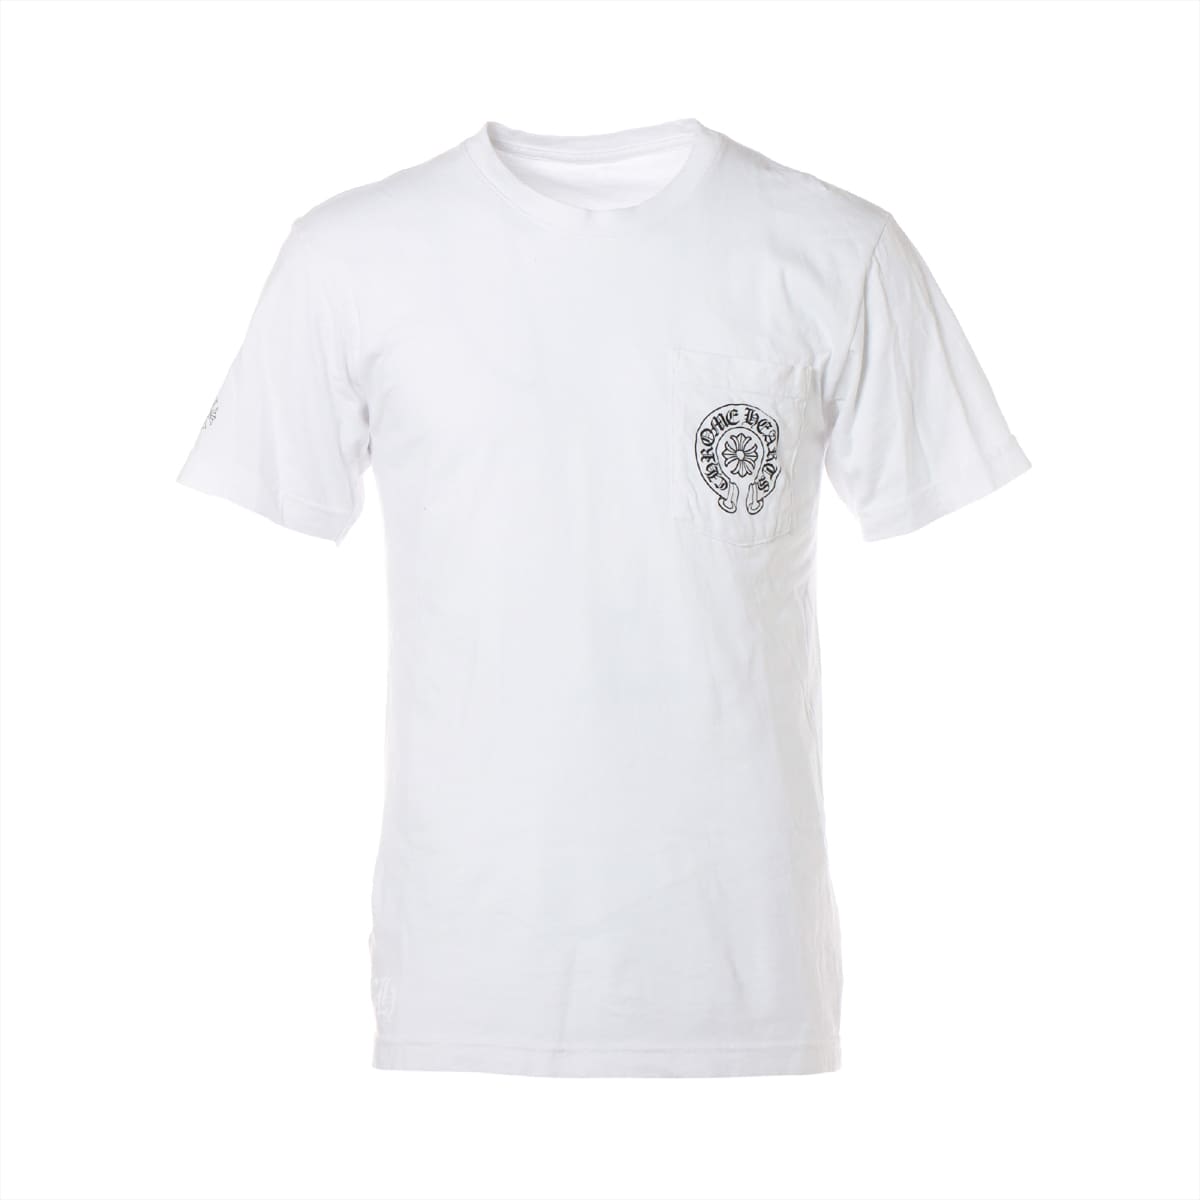 クロムハーツ Tシャツ コットン マルチカラーホースシュープリント ホワイト サイズM